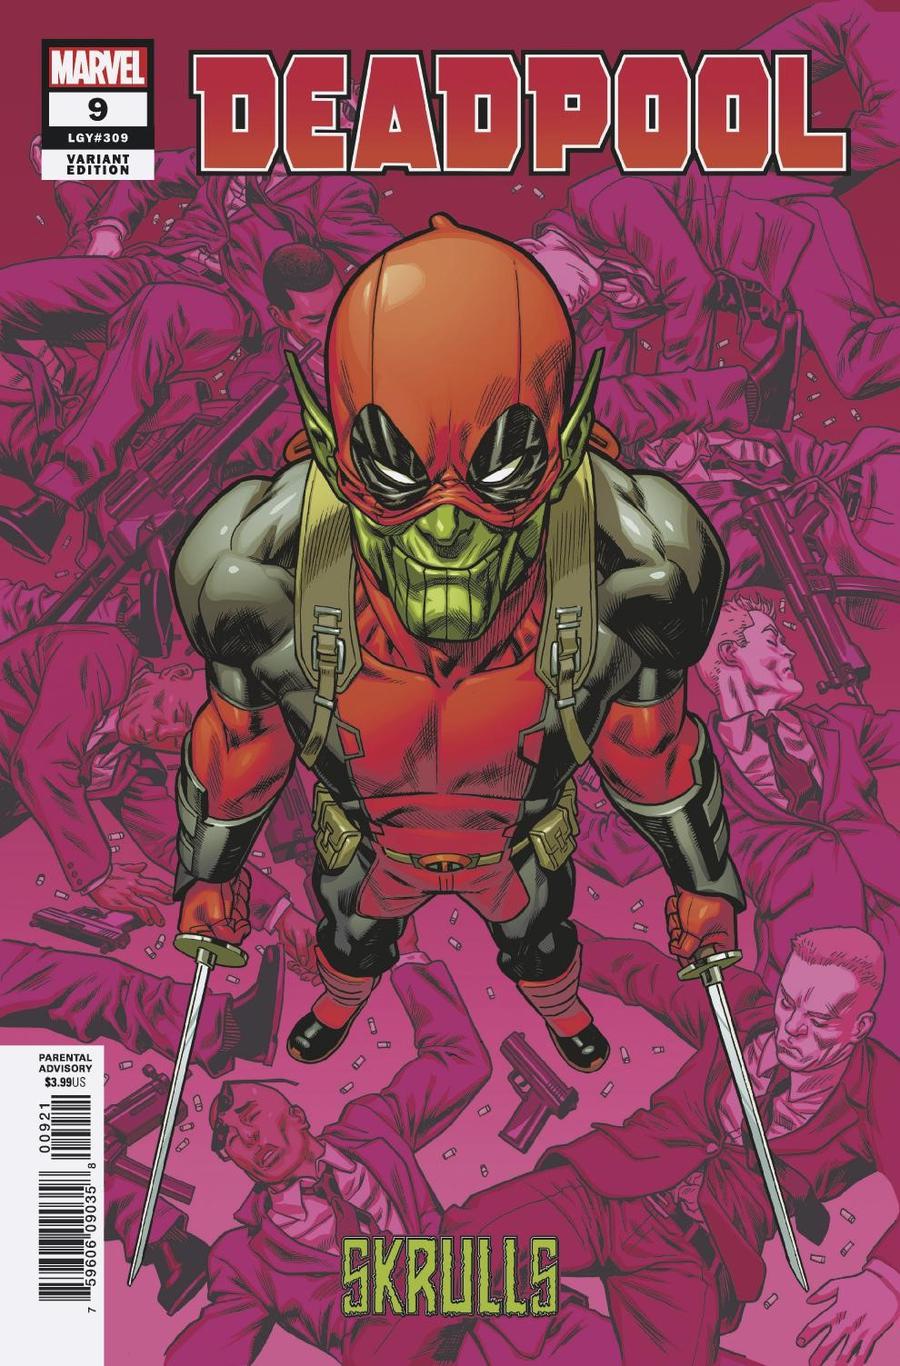 Deadpool Vol 6 #9 Cover B Variant Mike Hawthorne Skrulls Cover